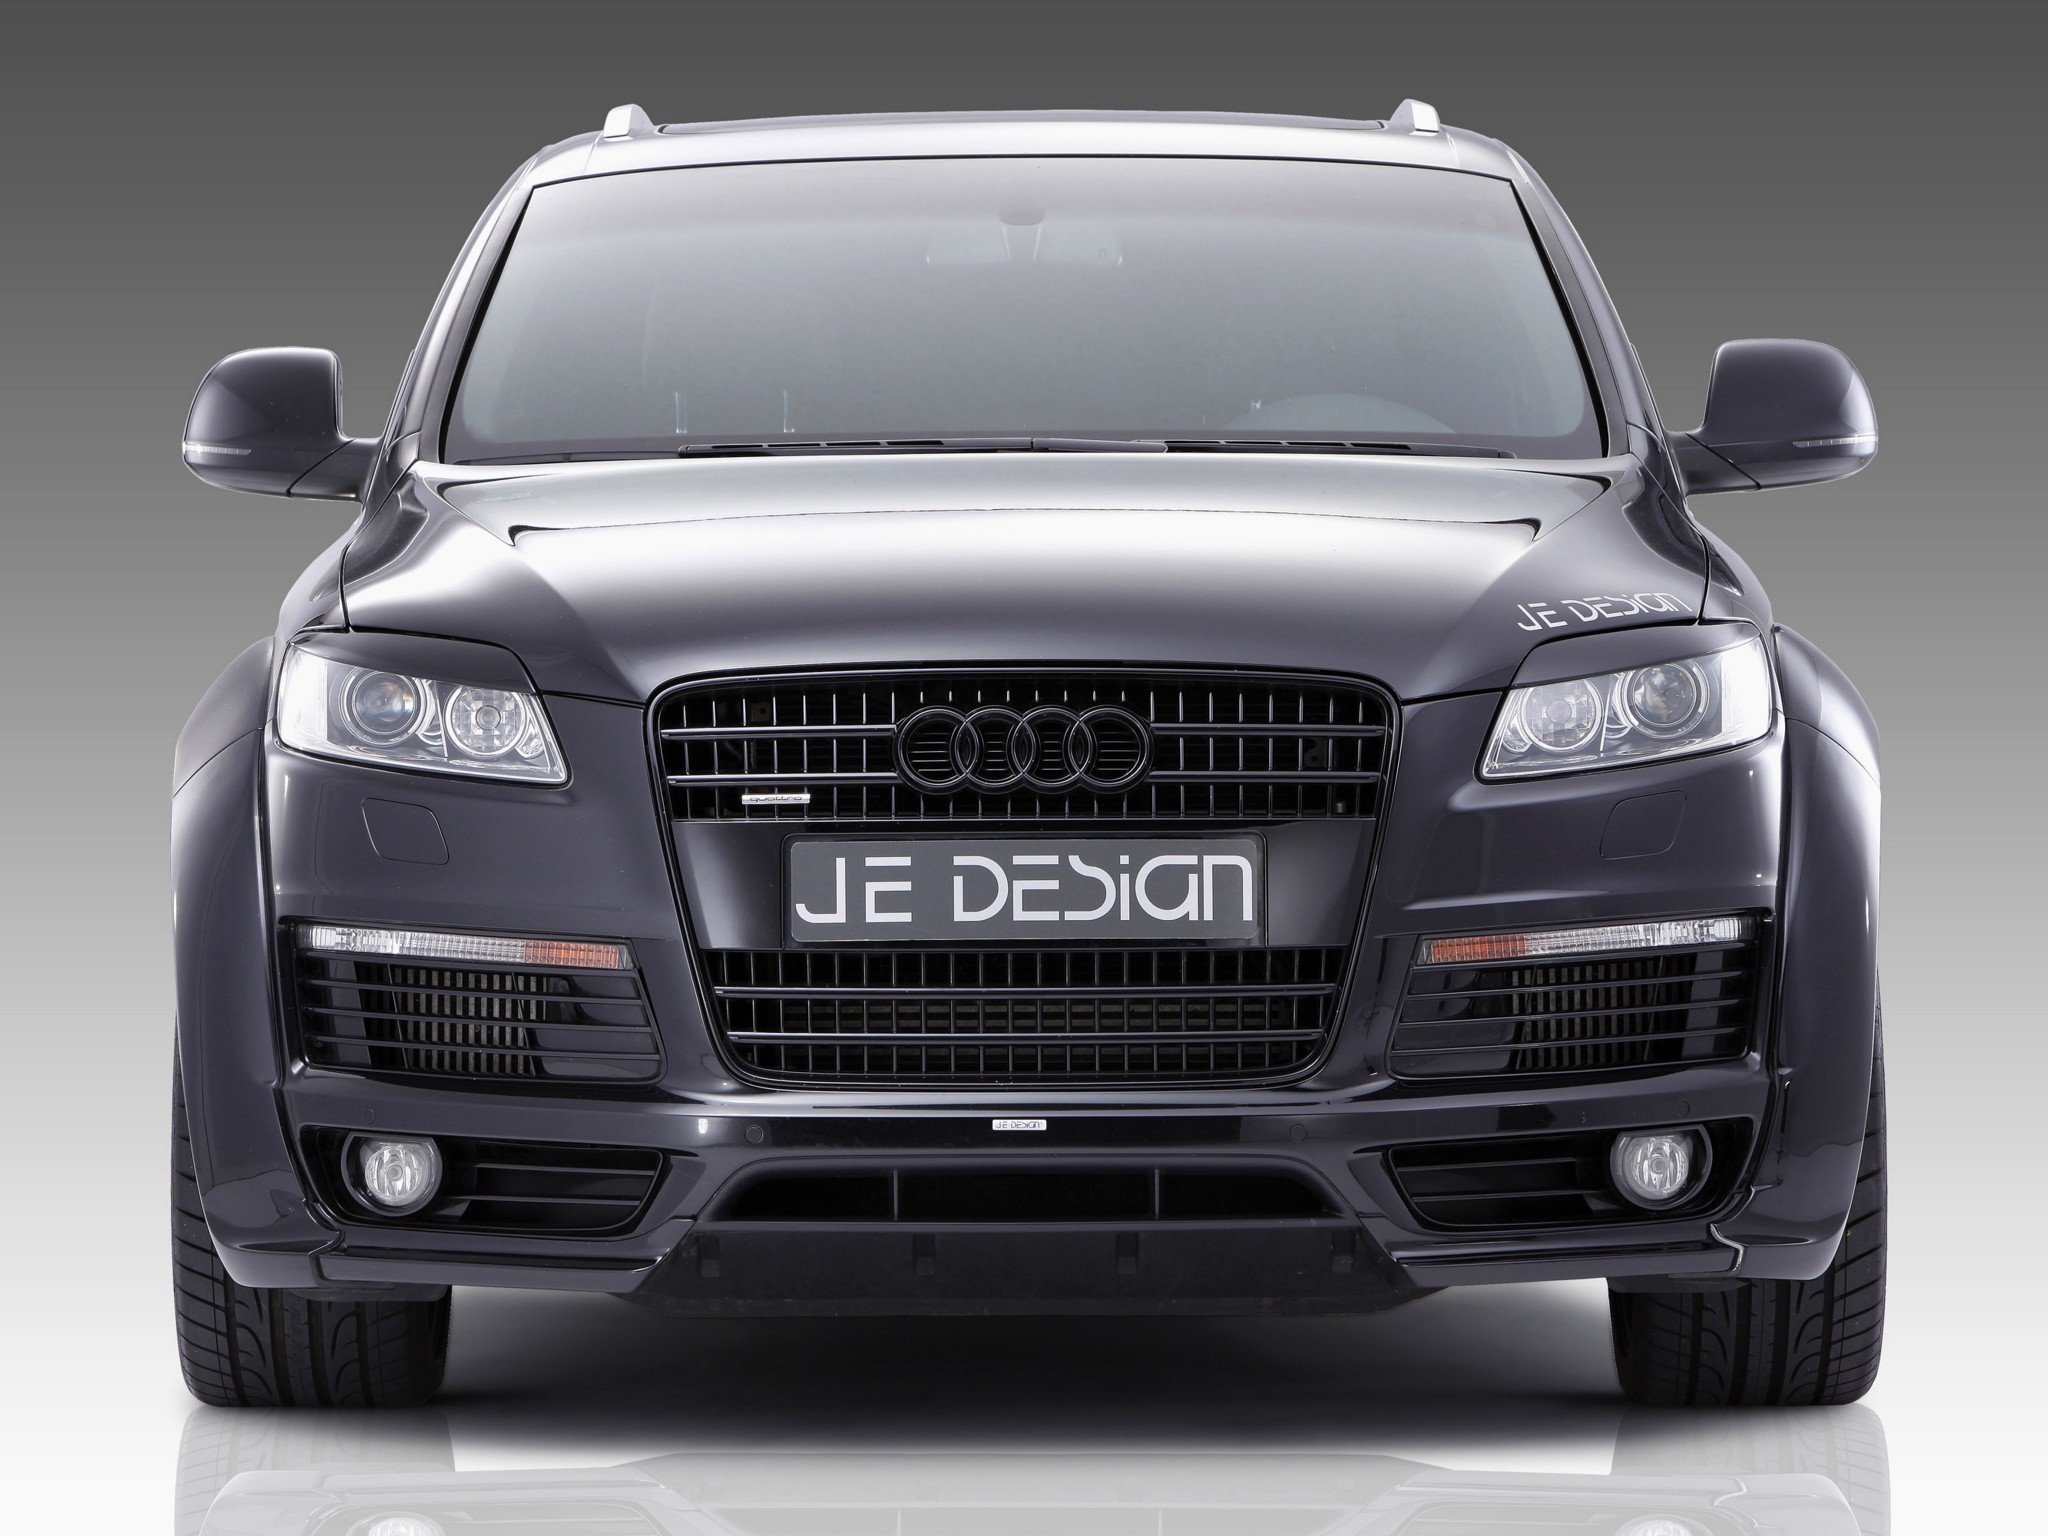 je, Design, Audi q7, S line, Cars, Modified, 2010 Wallpaper